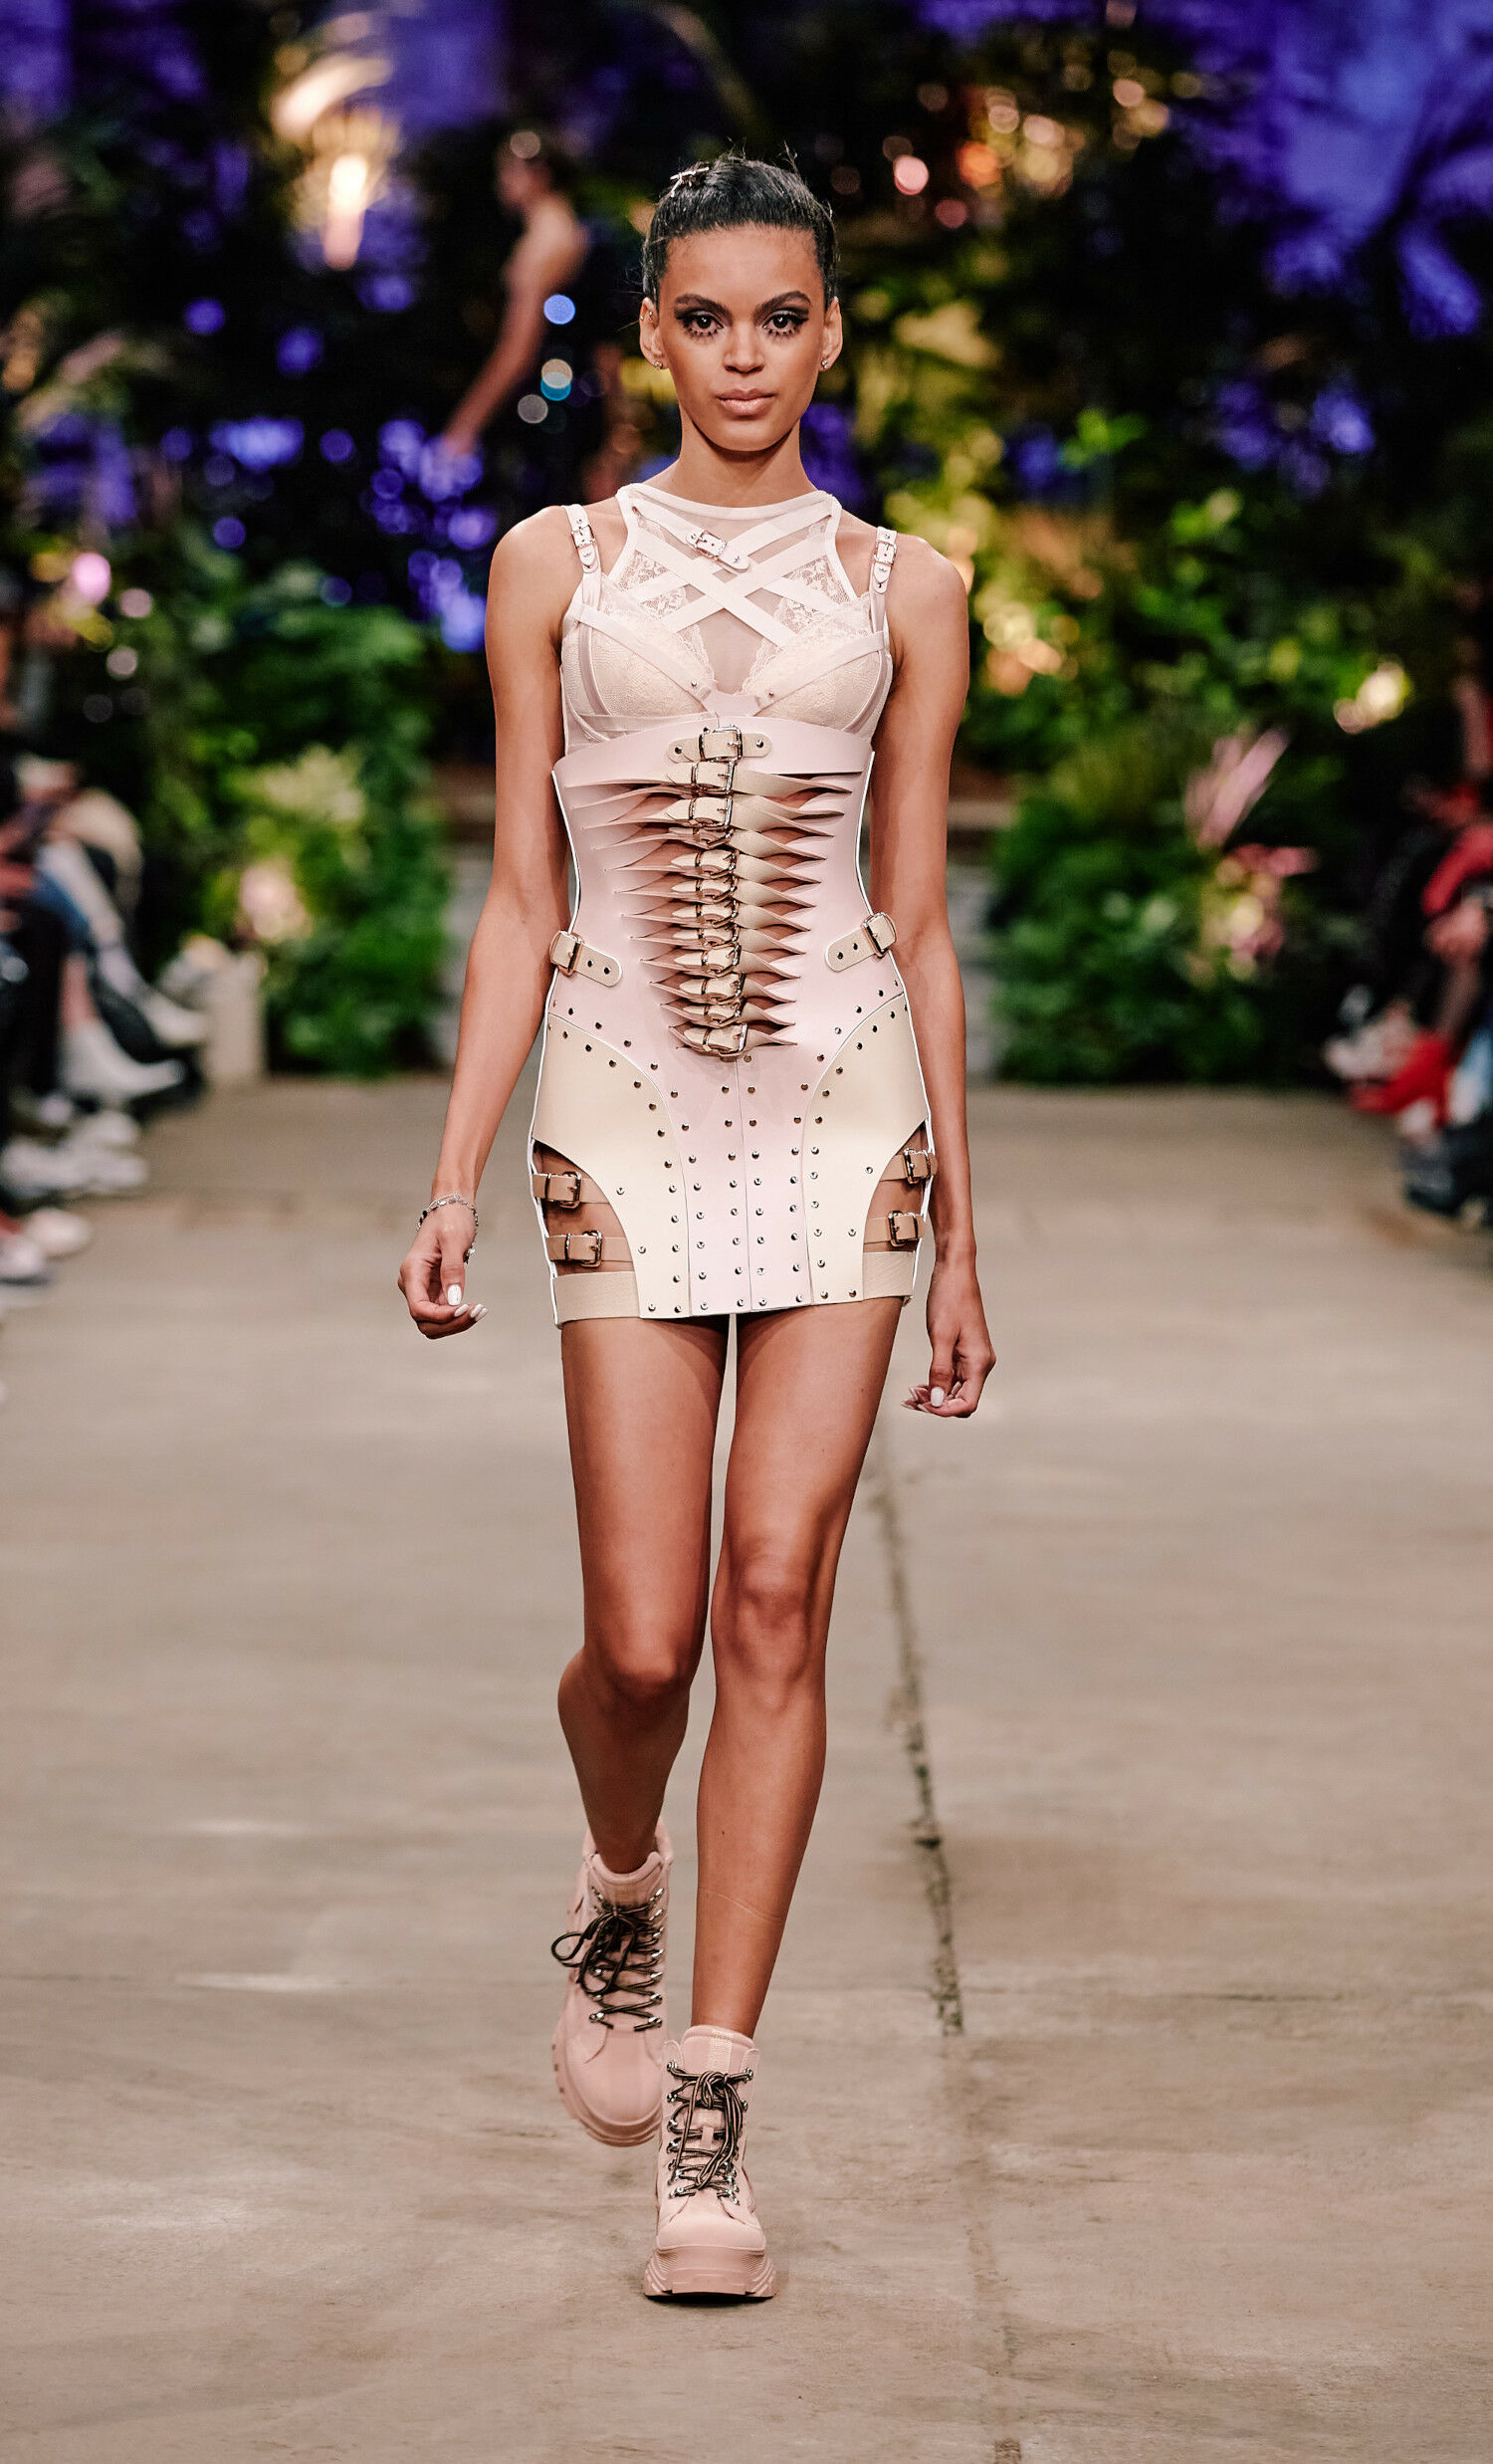 Ein Model in einem enganliegenden Kleid aus festem Material in zartem Rosa läuft über einen Catwalk